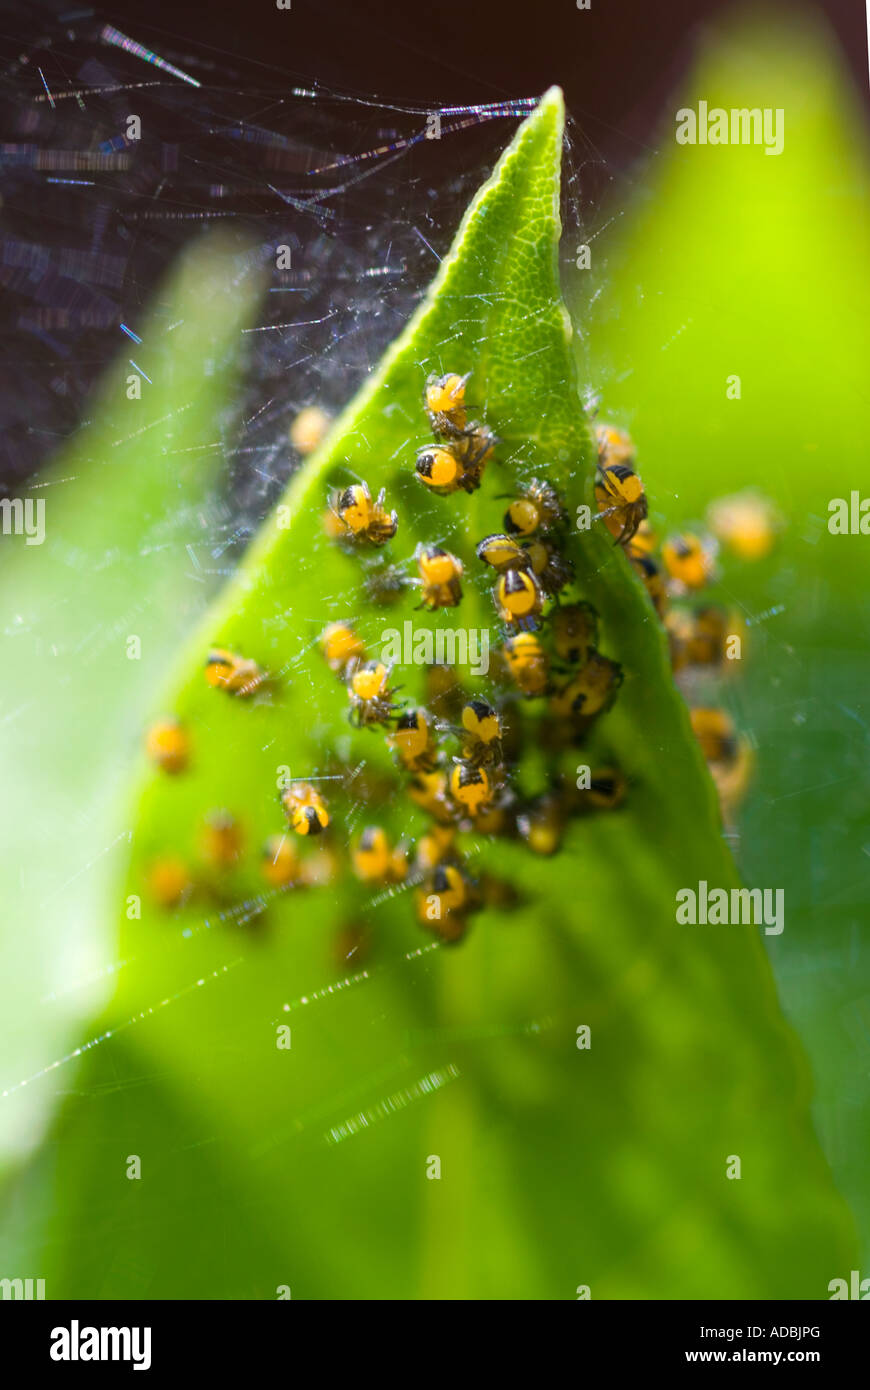 Macro de Vertical jeune bébé de petits le jardin commun 'araignée araneus diadematus' dans un groupe de protection sur une feuille Banque D'Images